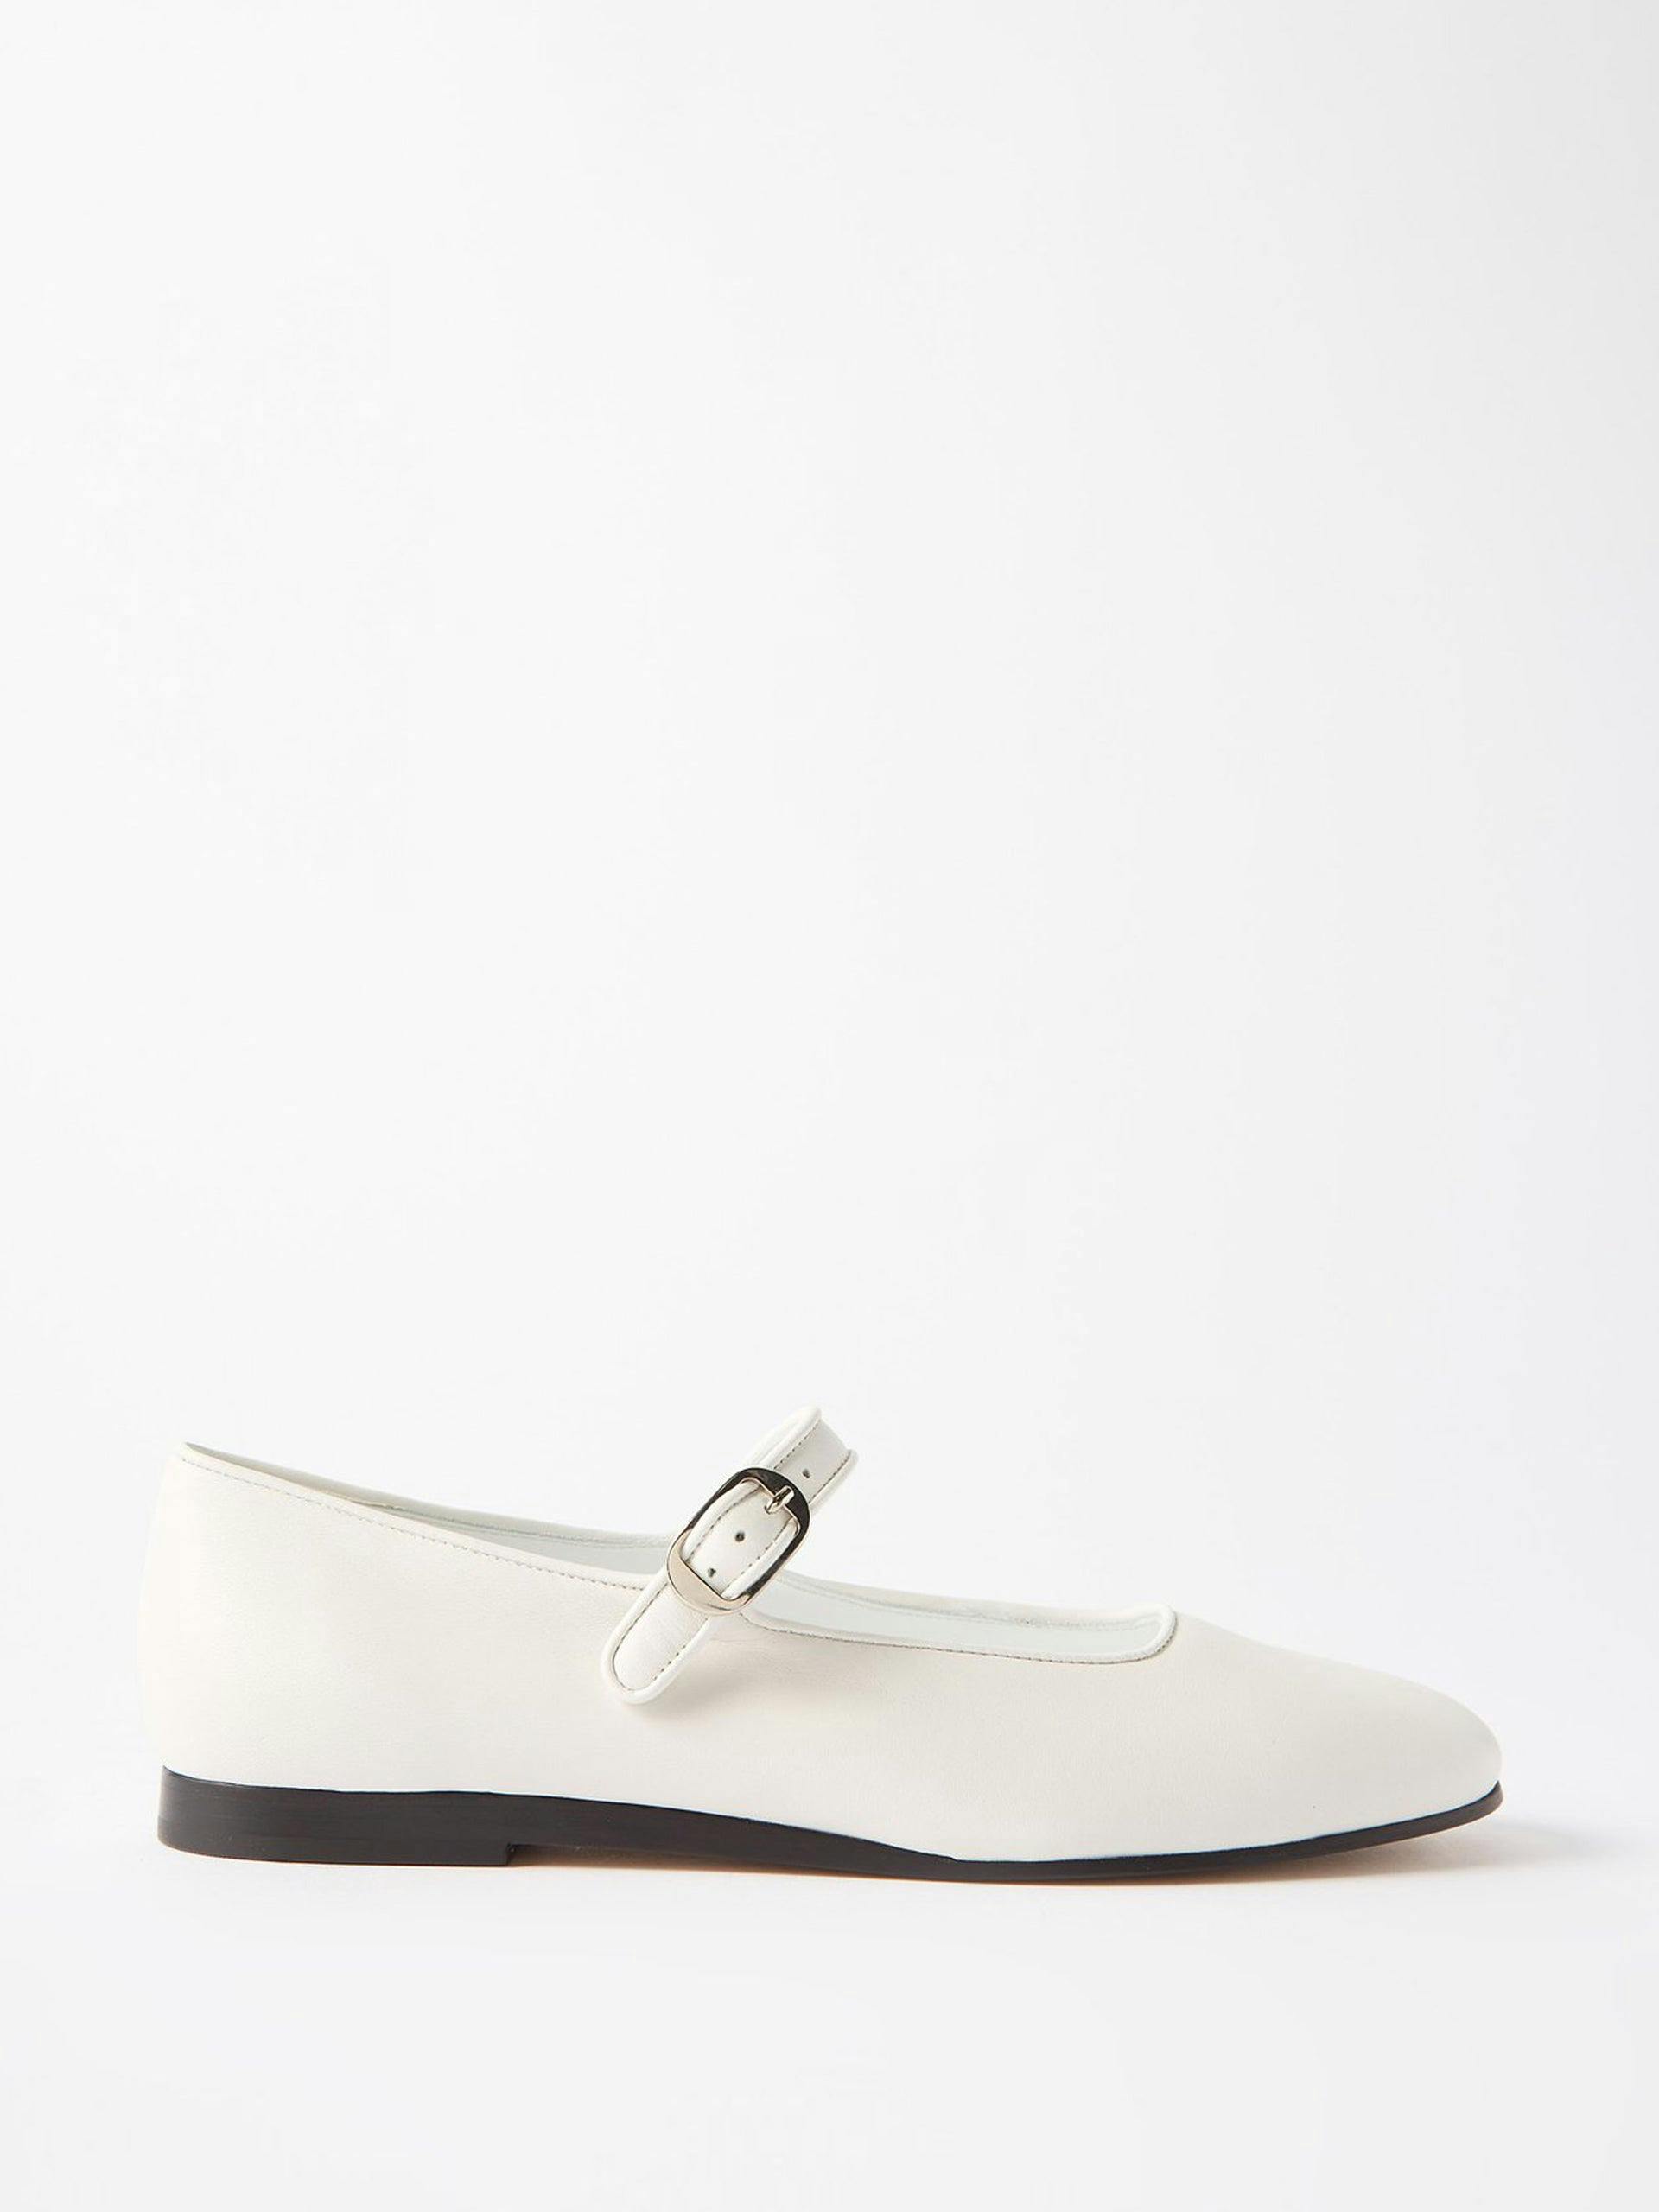 White round-toe leather Mary Jane flats